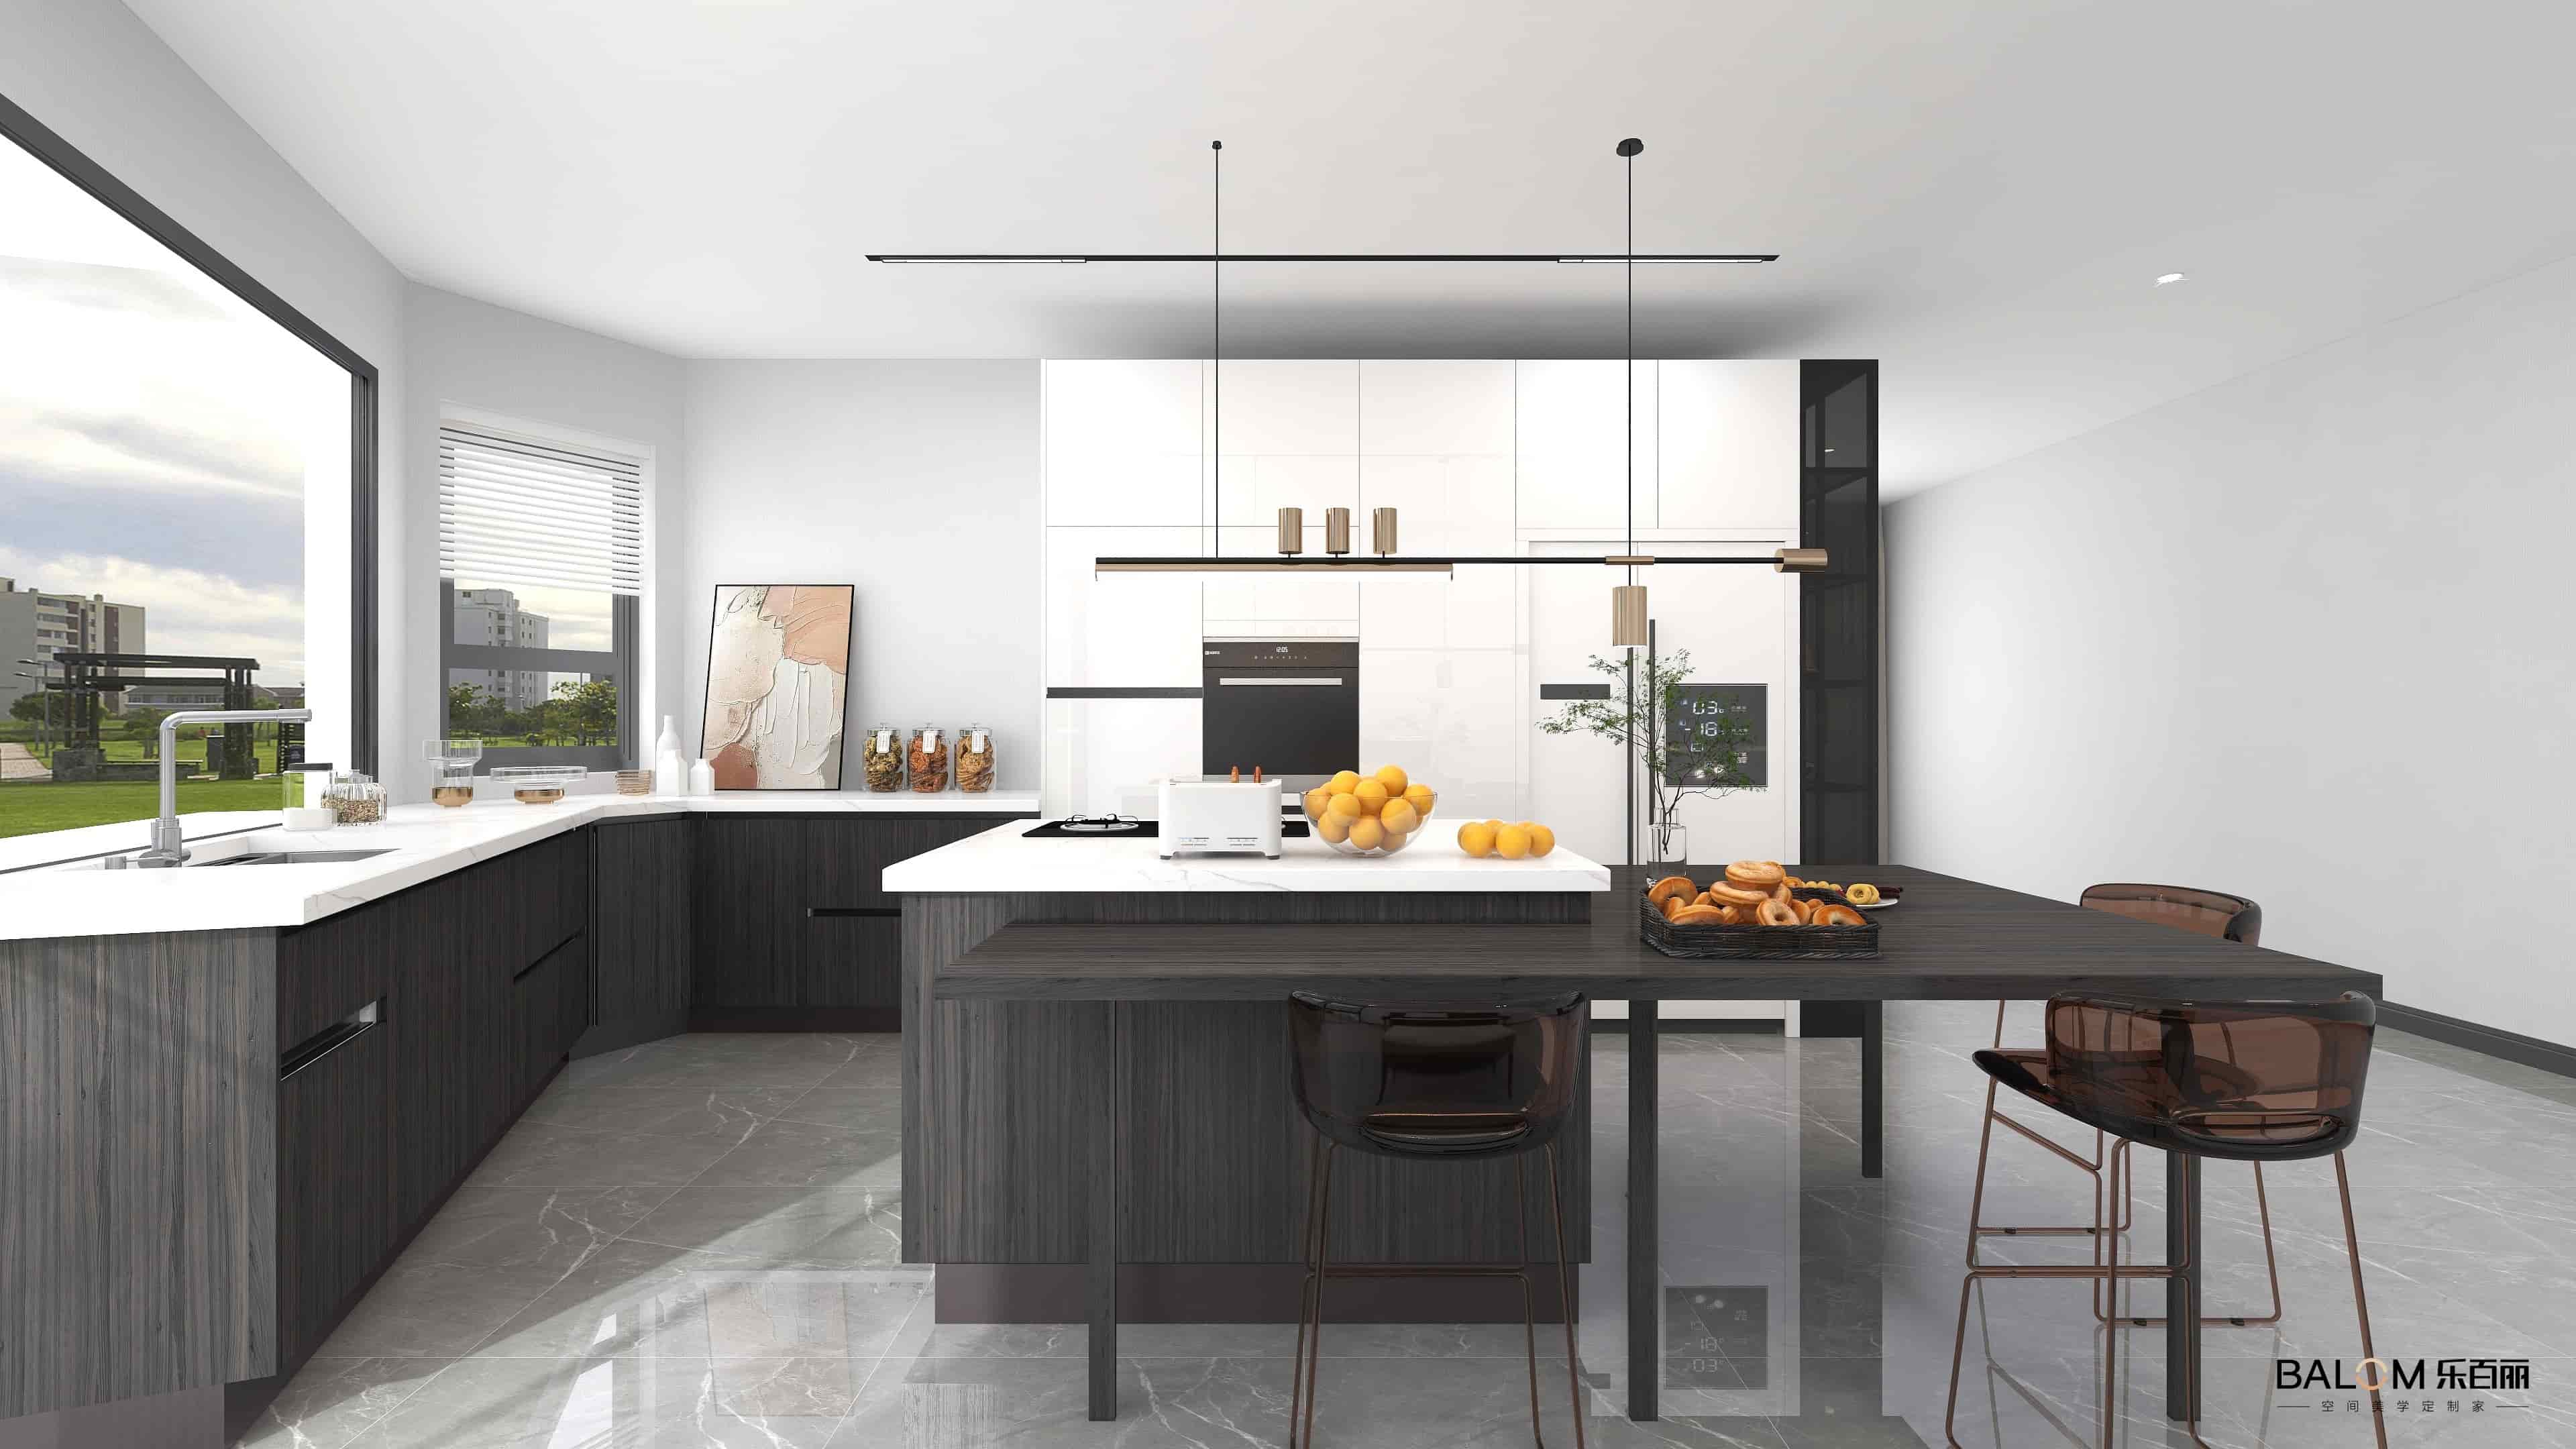 Design de armário de cozinha personalizado com ilha central
